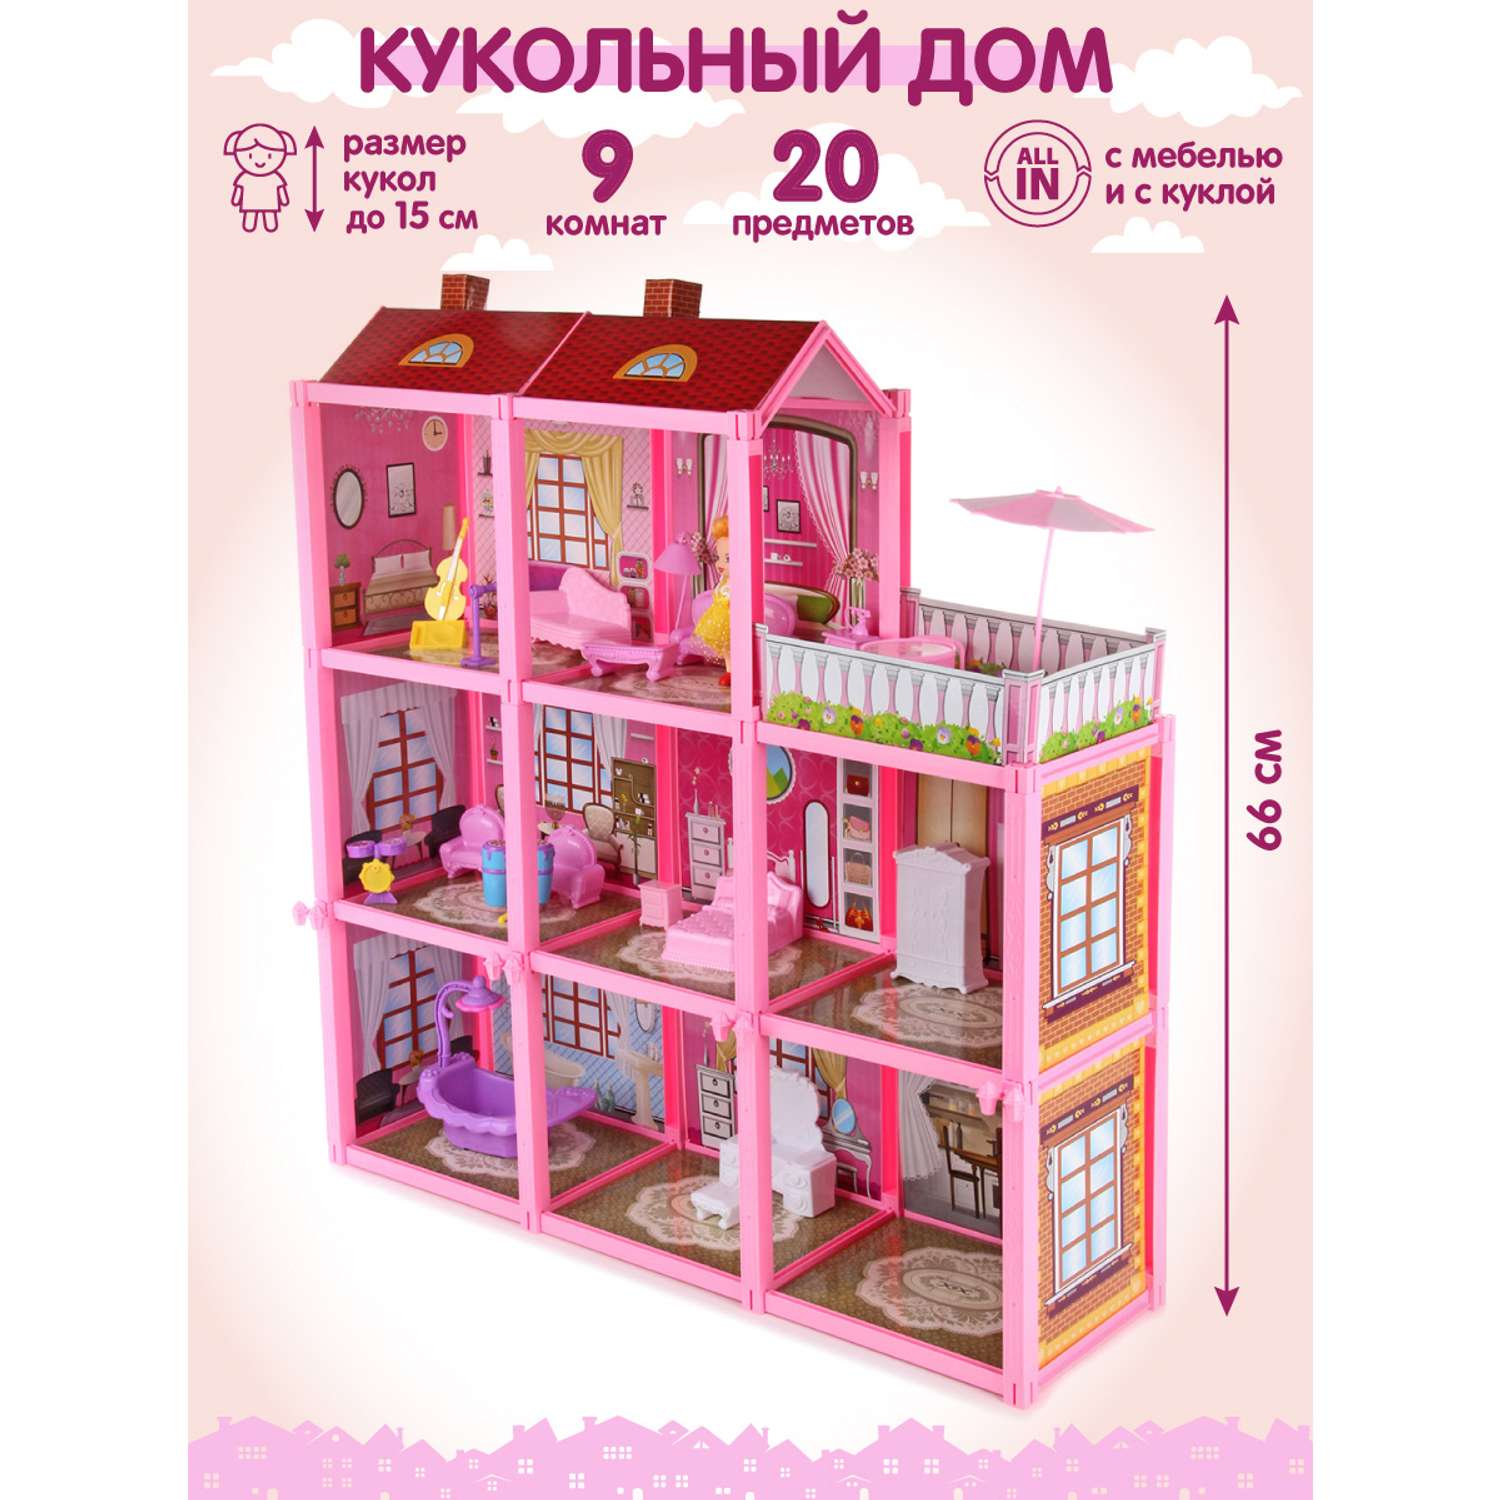 Кукольный домик Veld Co мебель кукла 9 комнат 3 этажа 20 предметов 109345 - фото 1